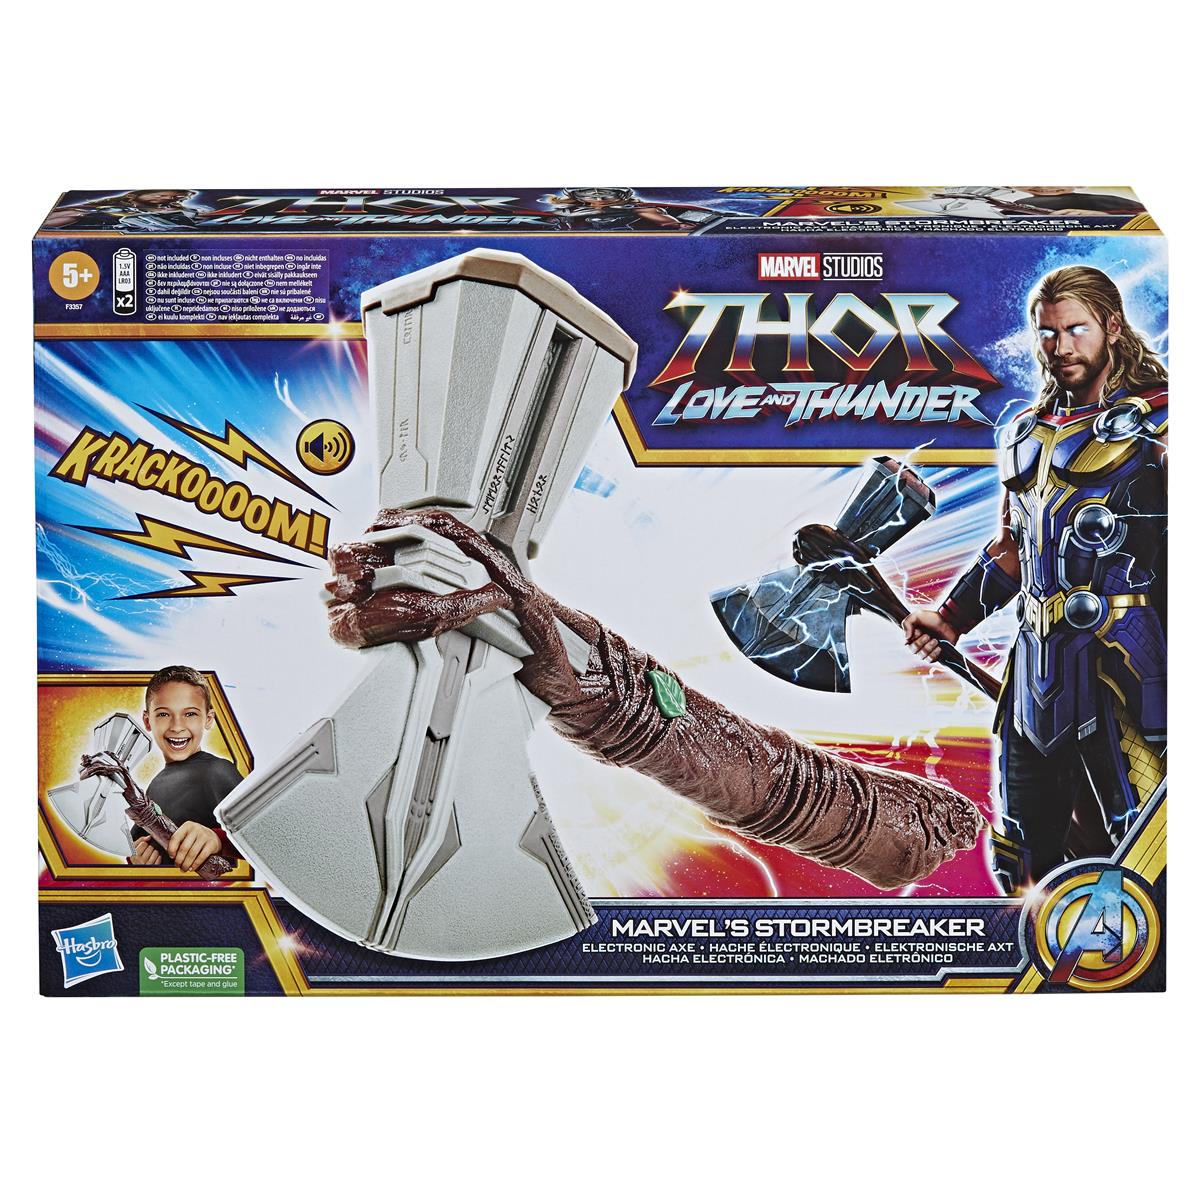 Thor Love & Thunder Marvel’s Stormbreaker